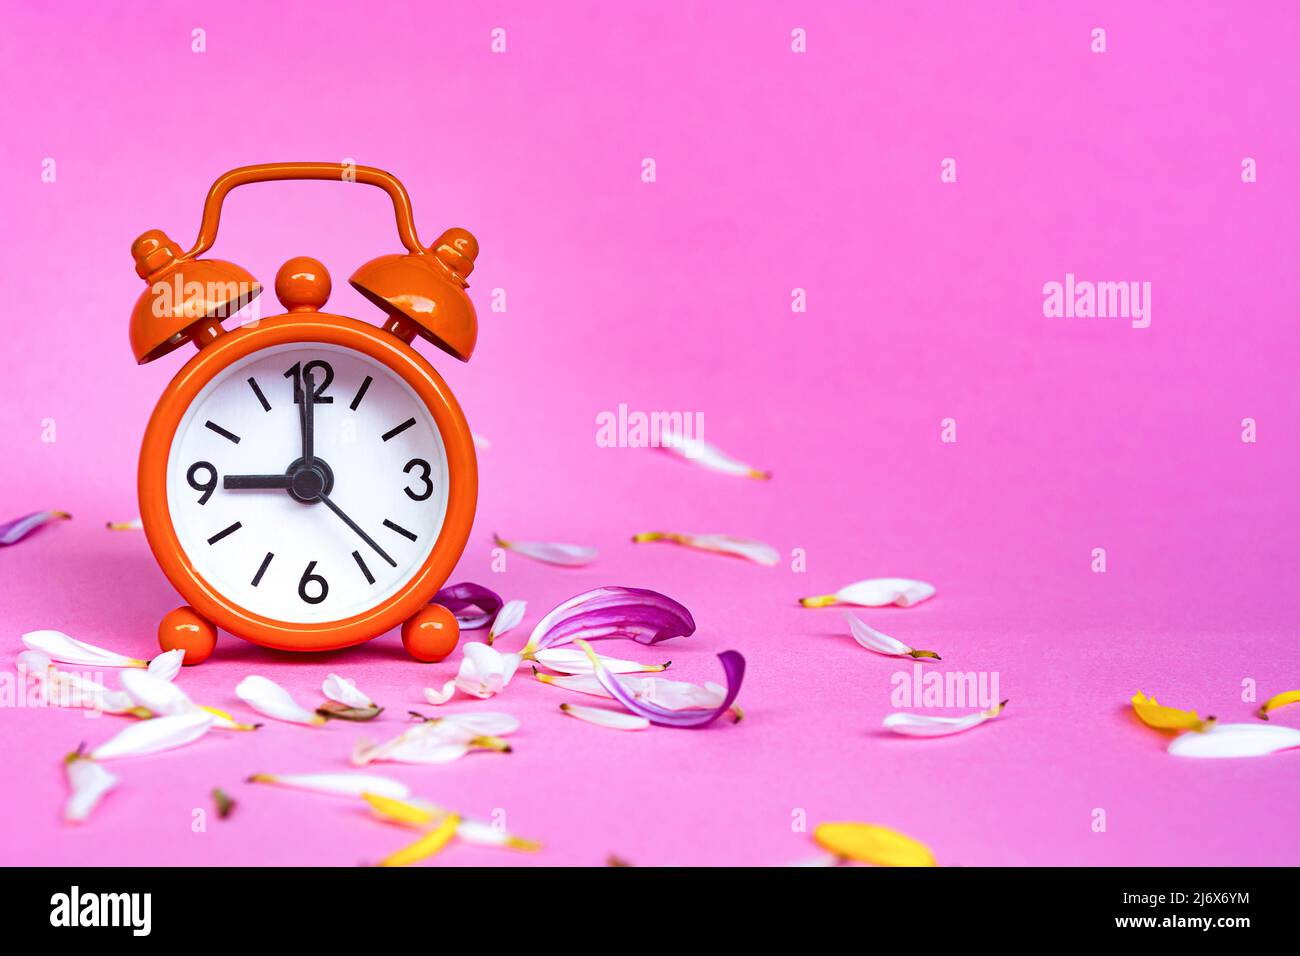 Reloj de alarma naranja aislado sobre fondo rosa con pétalos de flores. El  reloj está ajustado a las 9 en punto. Espacio de copia Fotografía de stock  - Alamy